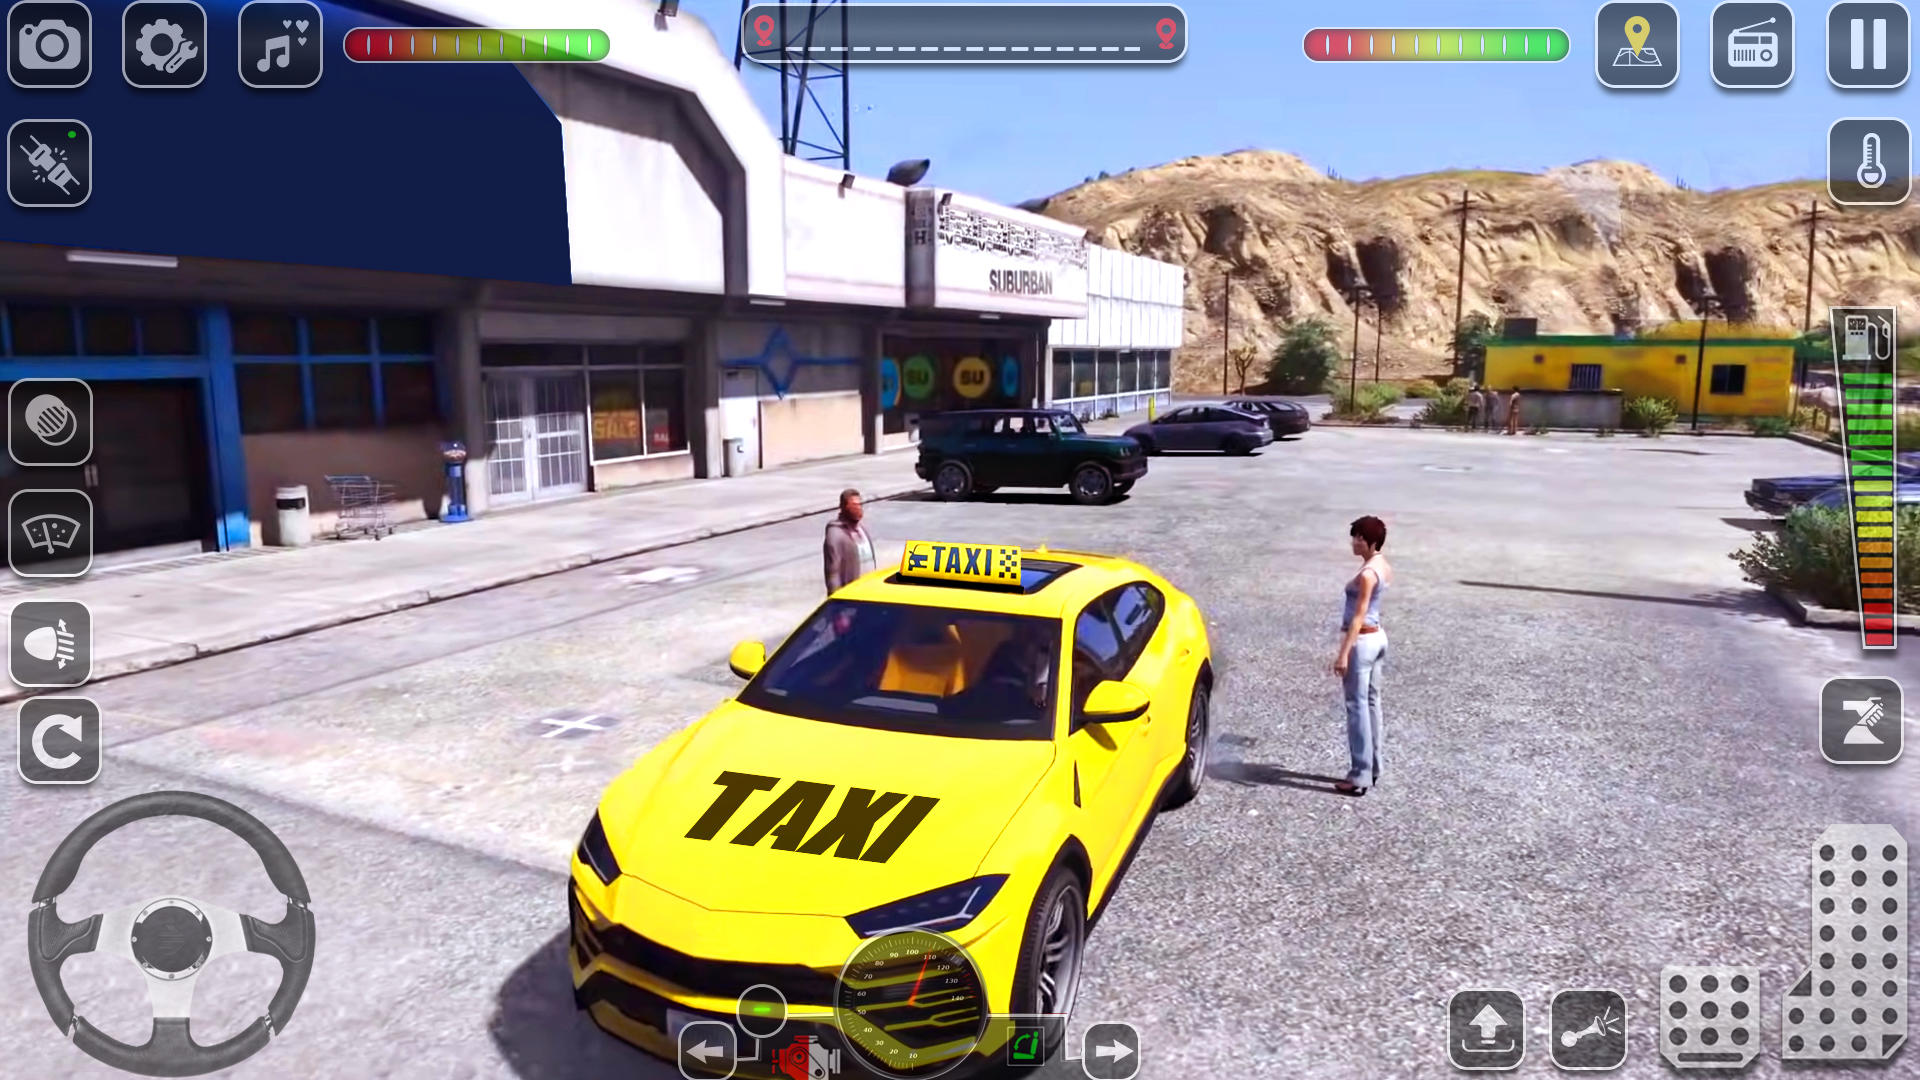 Screenshot 1 of Taxi Games Simulator 0.1